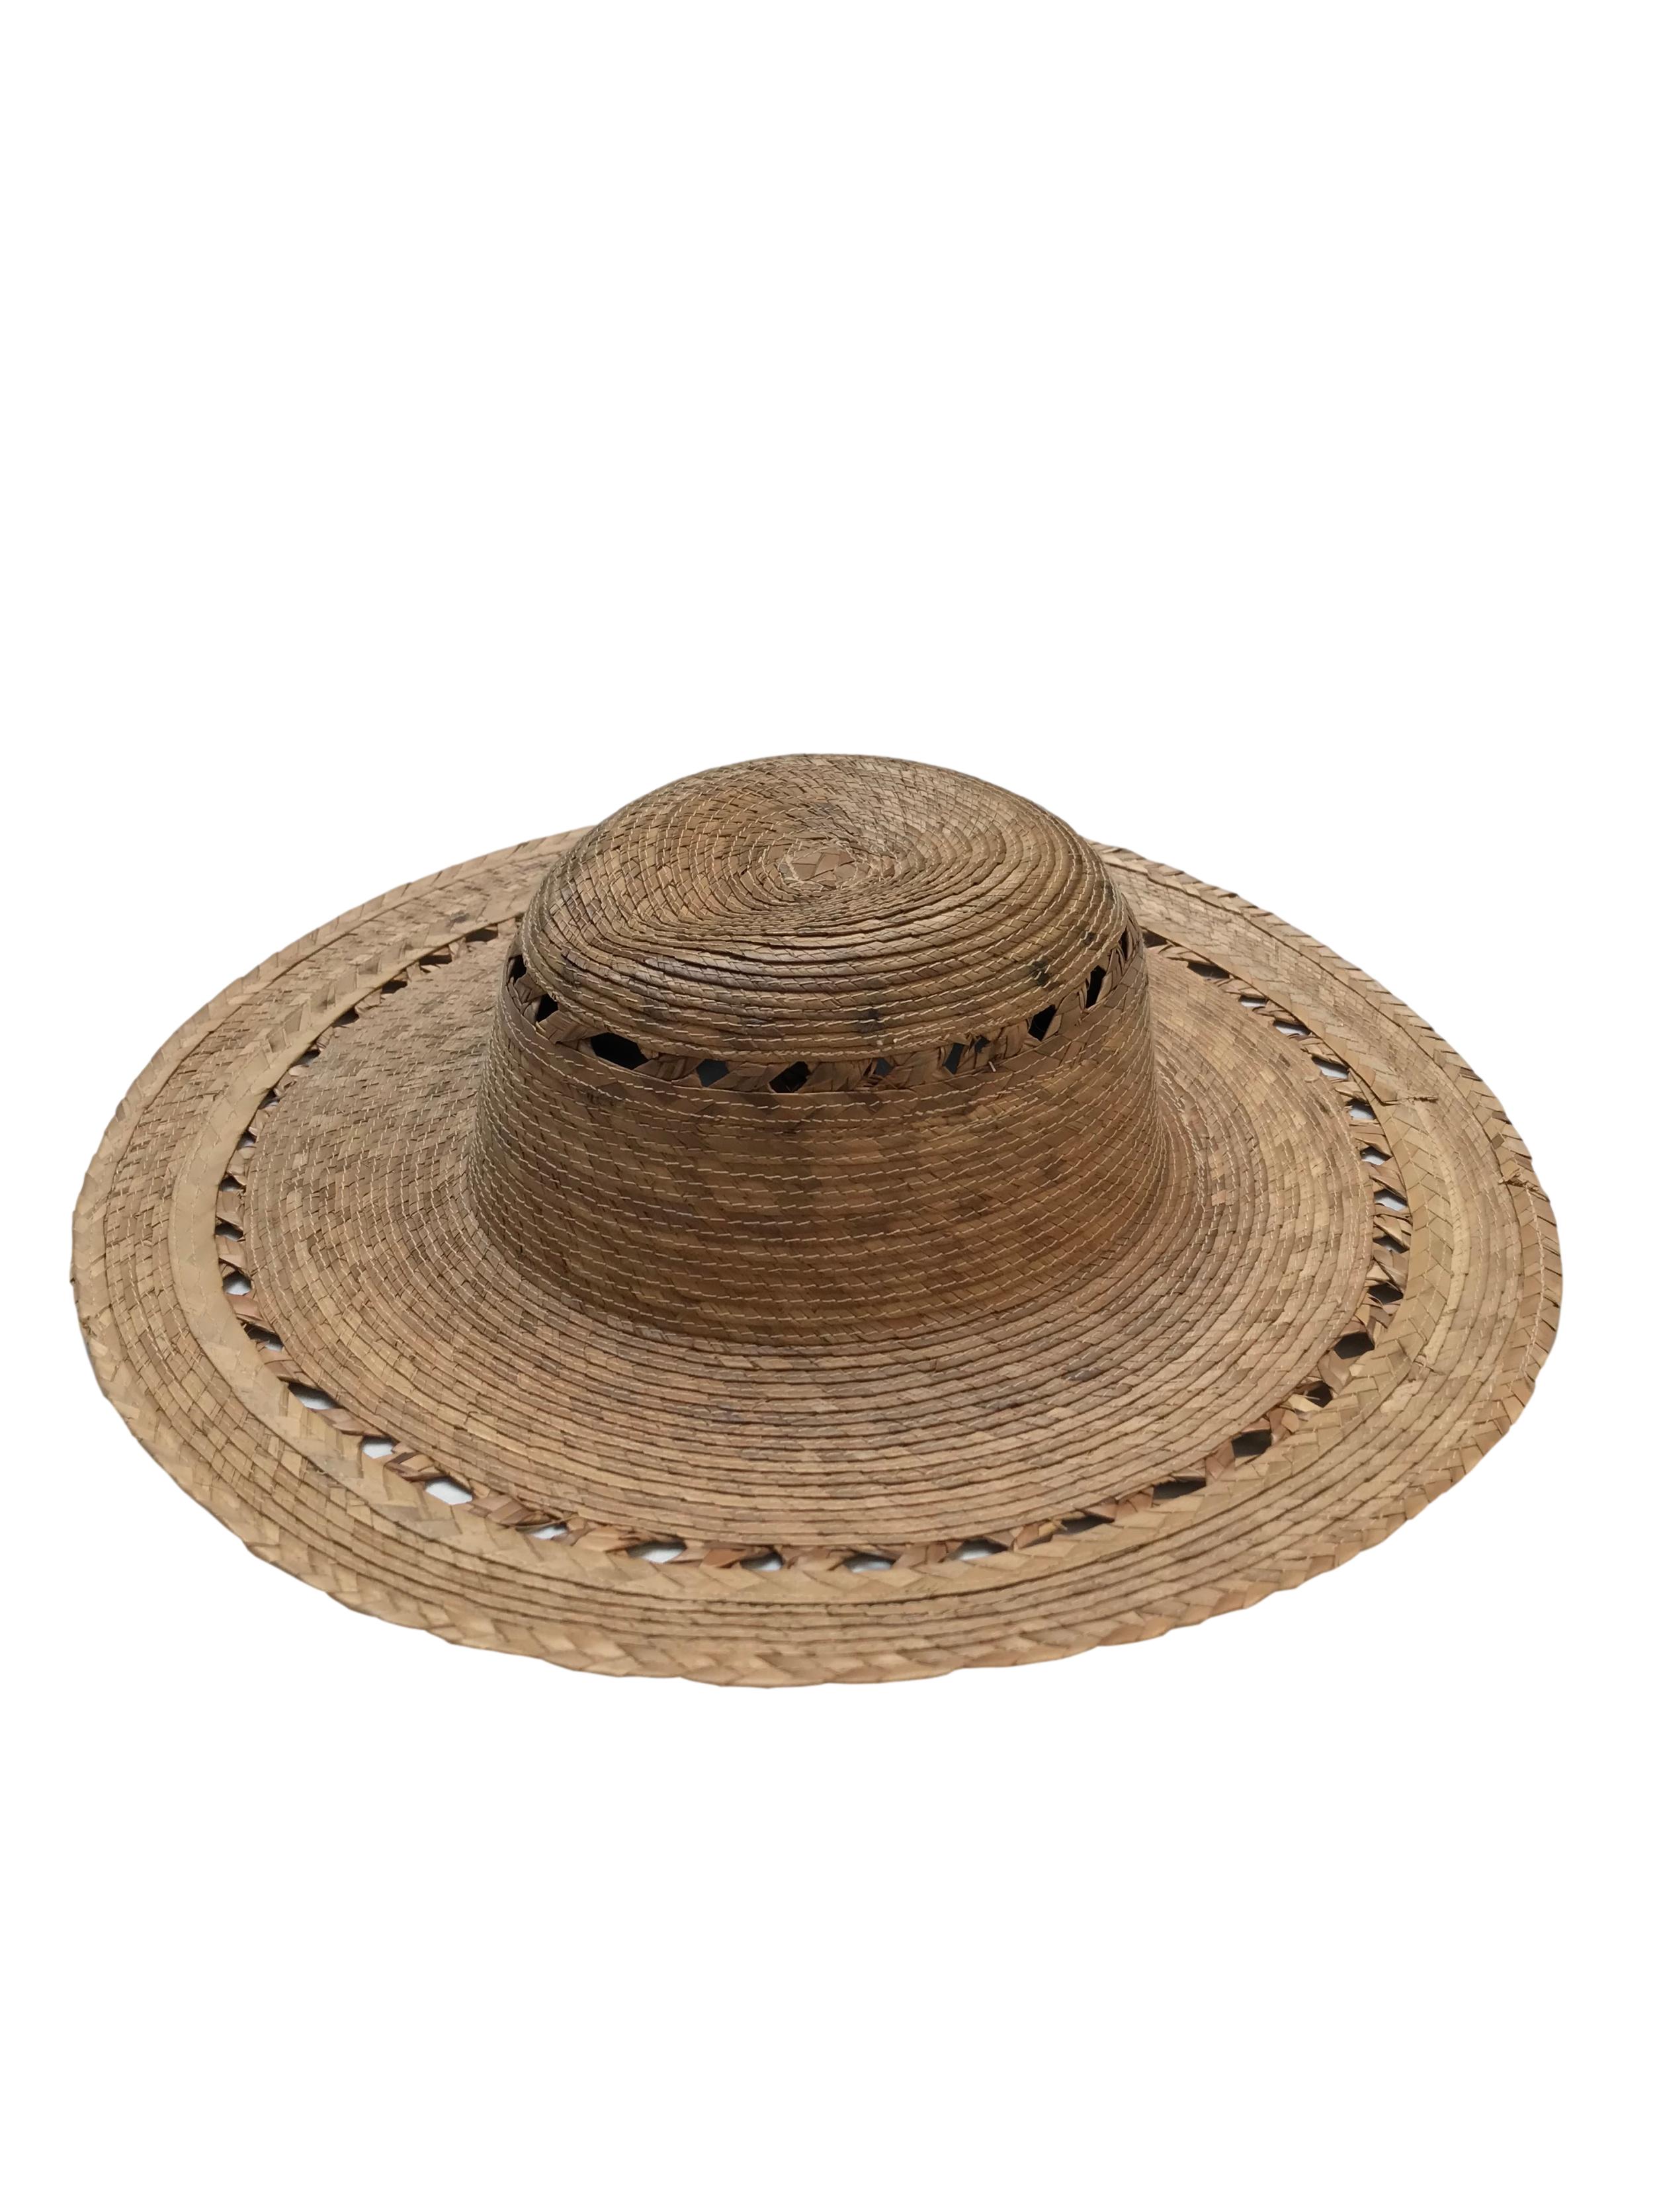 Sombrero de paja de ala ancha. Circunferencia 40cm Cabeza 19cm